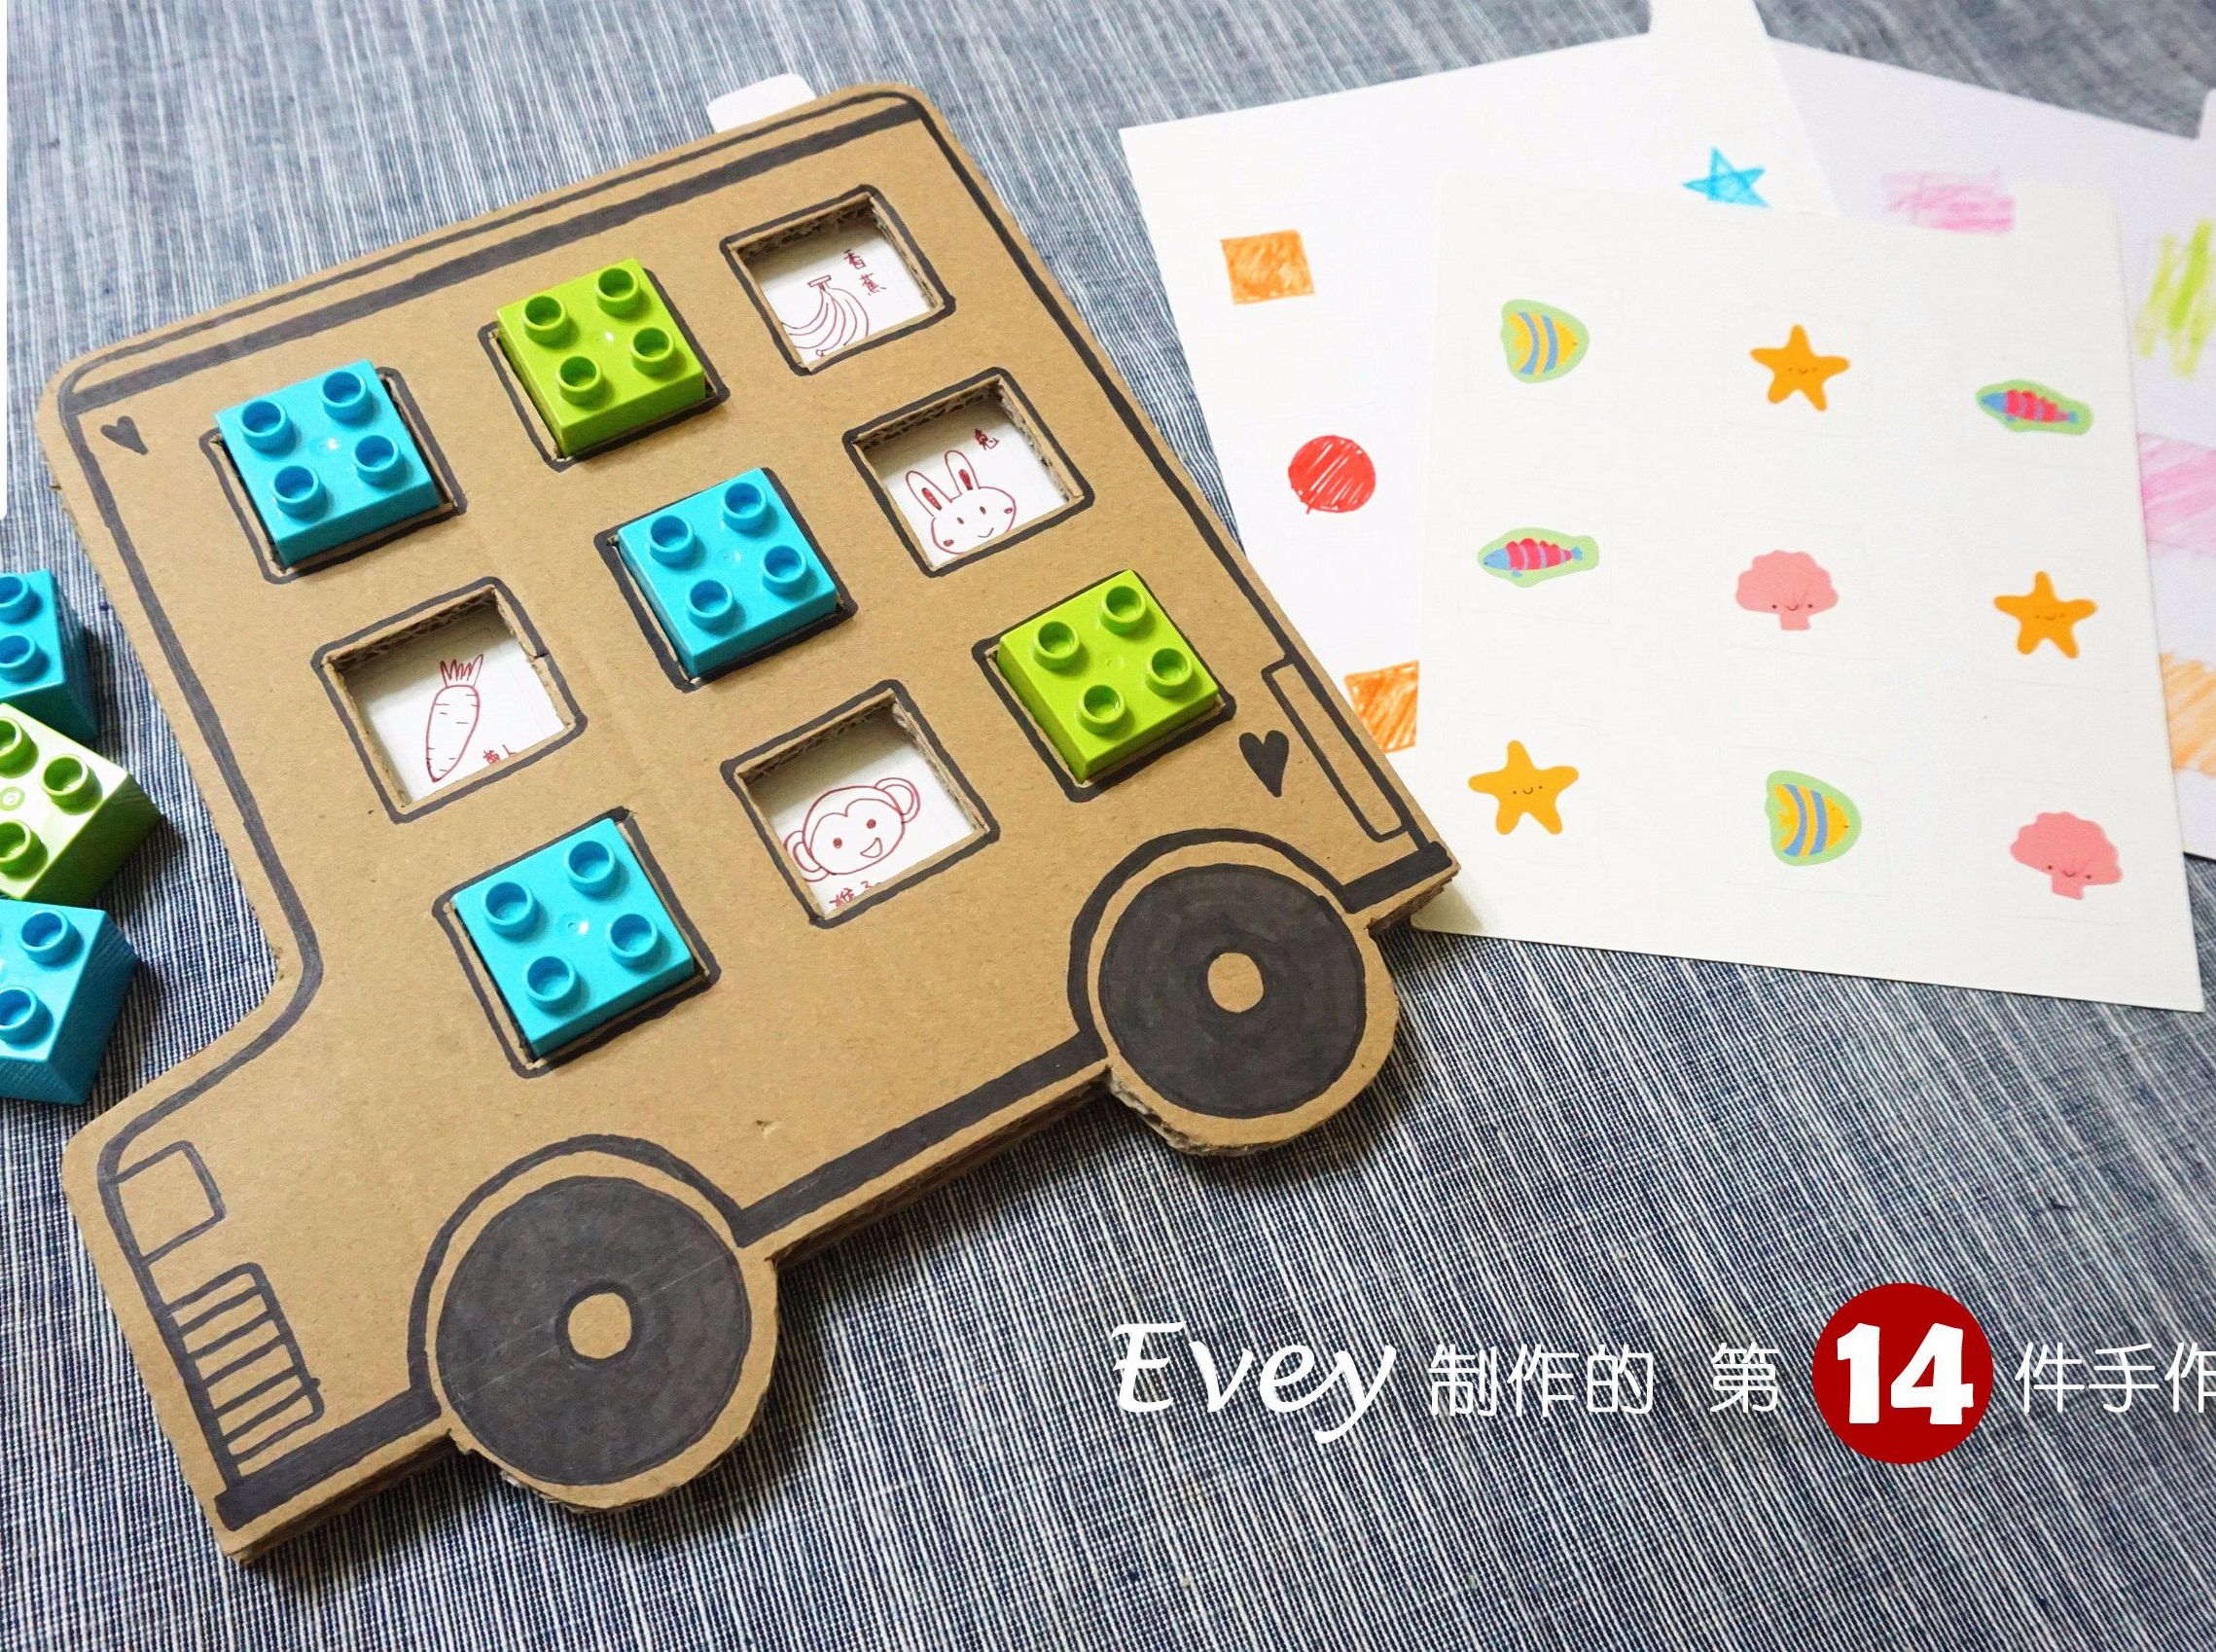 ＃Evey手作＃＃第14件手作玩具＃
自制记忆力游戏纸板--小小巴士翻翻看
锻炼观察力和记忆力的小游戏，玩配对，翻一翻，找一找，简单好玩！
游戏内容也是根据孩子的喜好来定制，能更快更准确地抓住孩子的兴趣点哦！

>>>这个小小巴士游戏板到底有些什么？
很简单，包括游戏底板，记忆题卡，还有用乐高或积木作为遮盖方块。

>>>那到底怎么玩呢？
首先，选一张记忆卡片插入游戏板中，然后把乐高覆盖在每个方格上，遮住卡片图案。
然后，轮流翻开乐高，每人每次翻开两个，如果是配对的话就可以把乐高拿走；如果不是配对的图案，则把乐高放回原处。直到所有乐高方块都被翻开。
